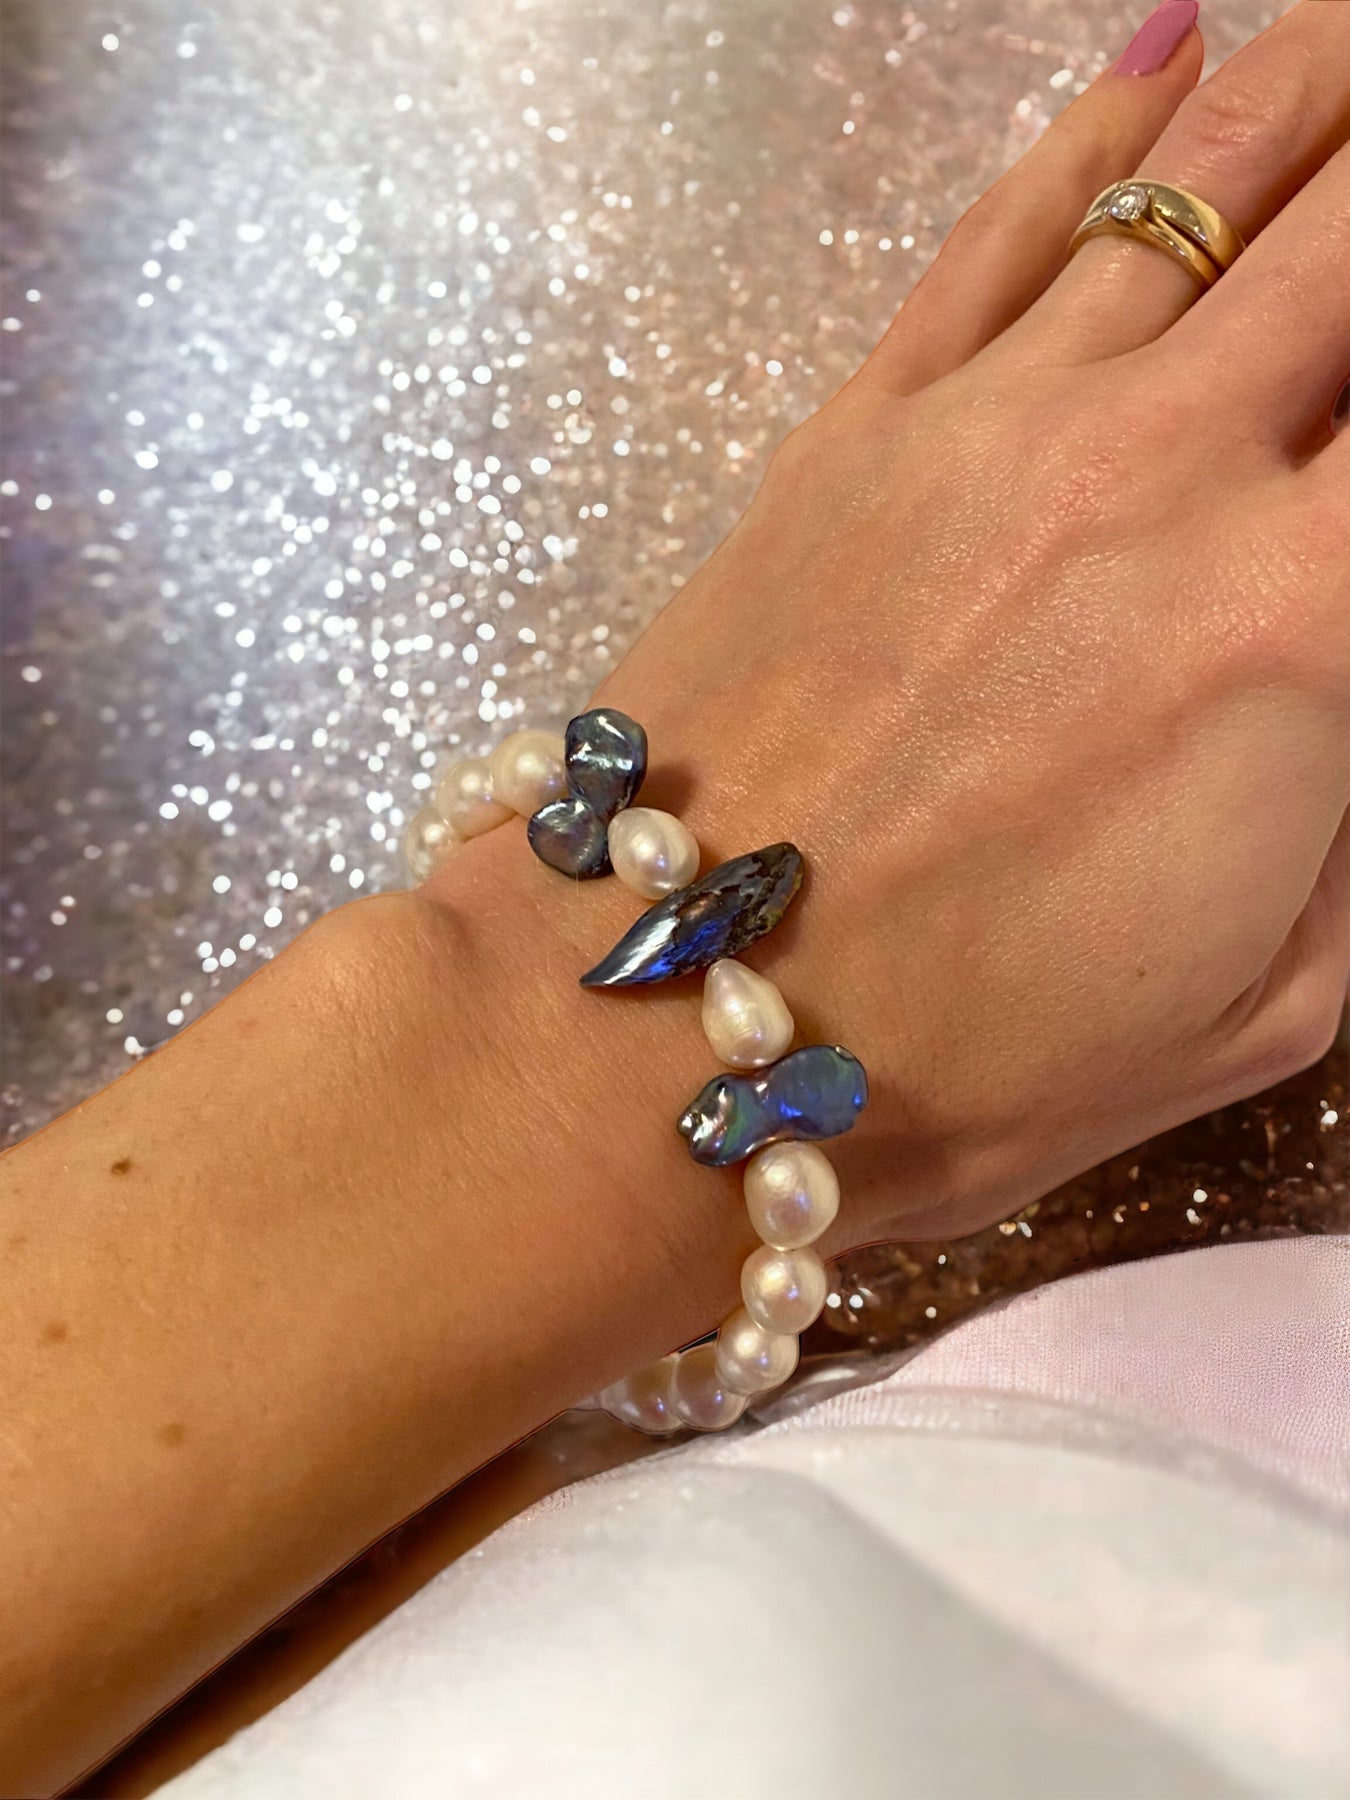 Schmuckset Halskette Perlenkette Perlenarmband weisse und blaue natürliche Süßwasserperlen